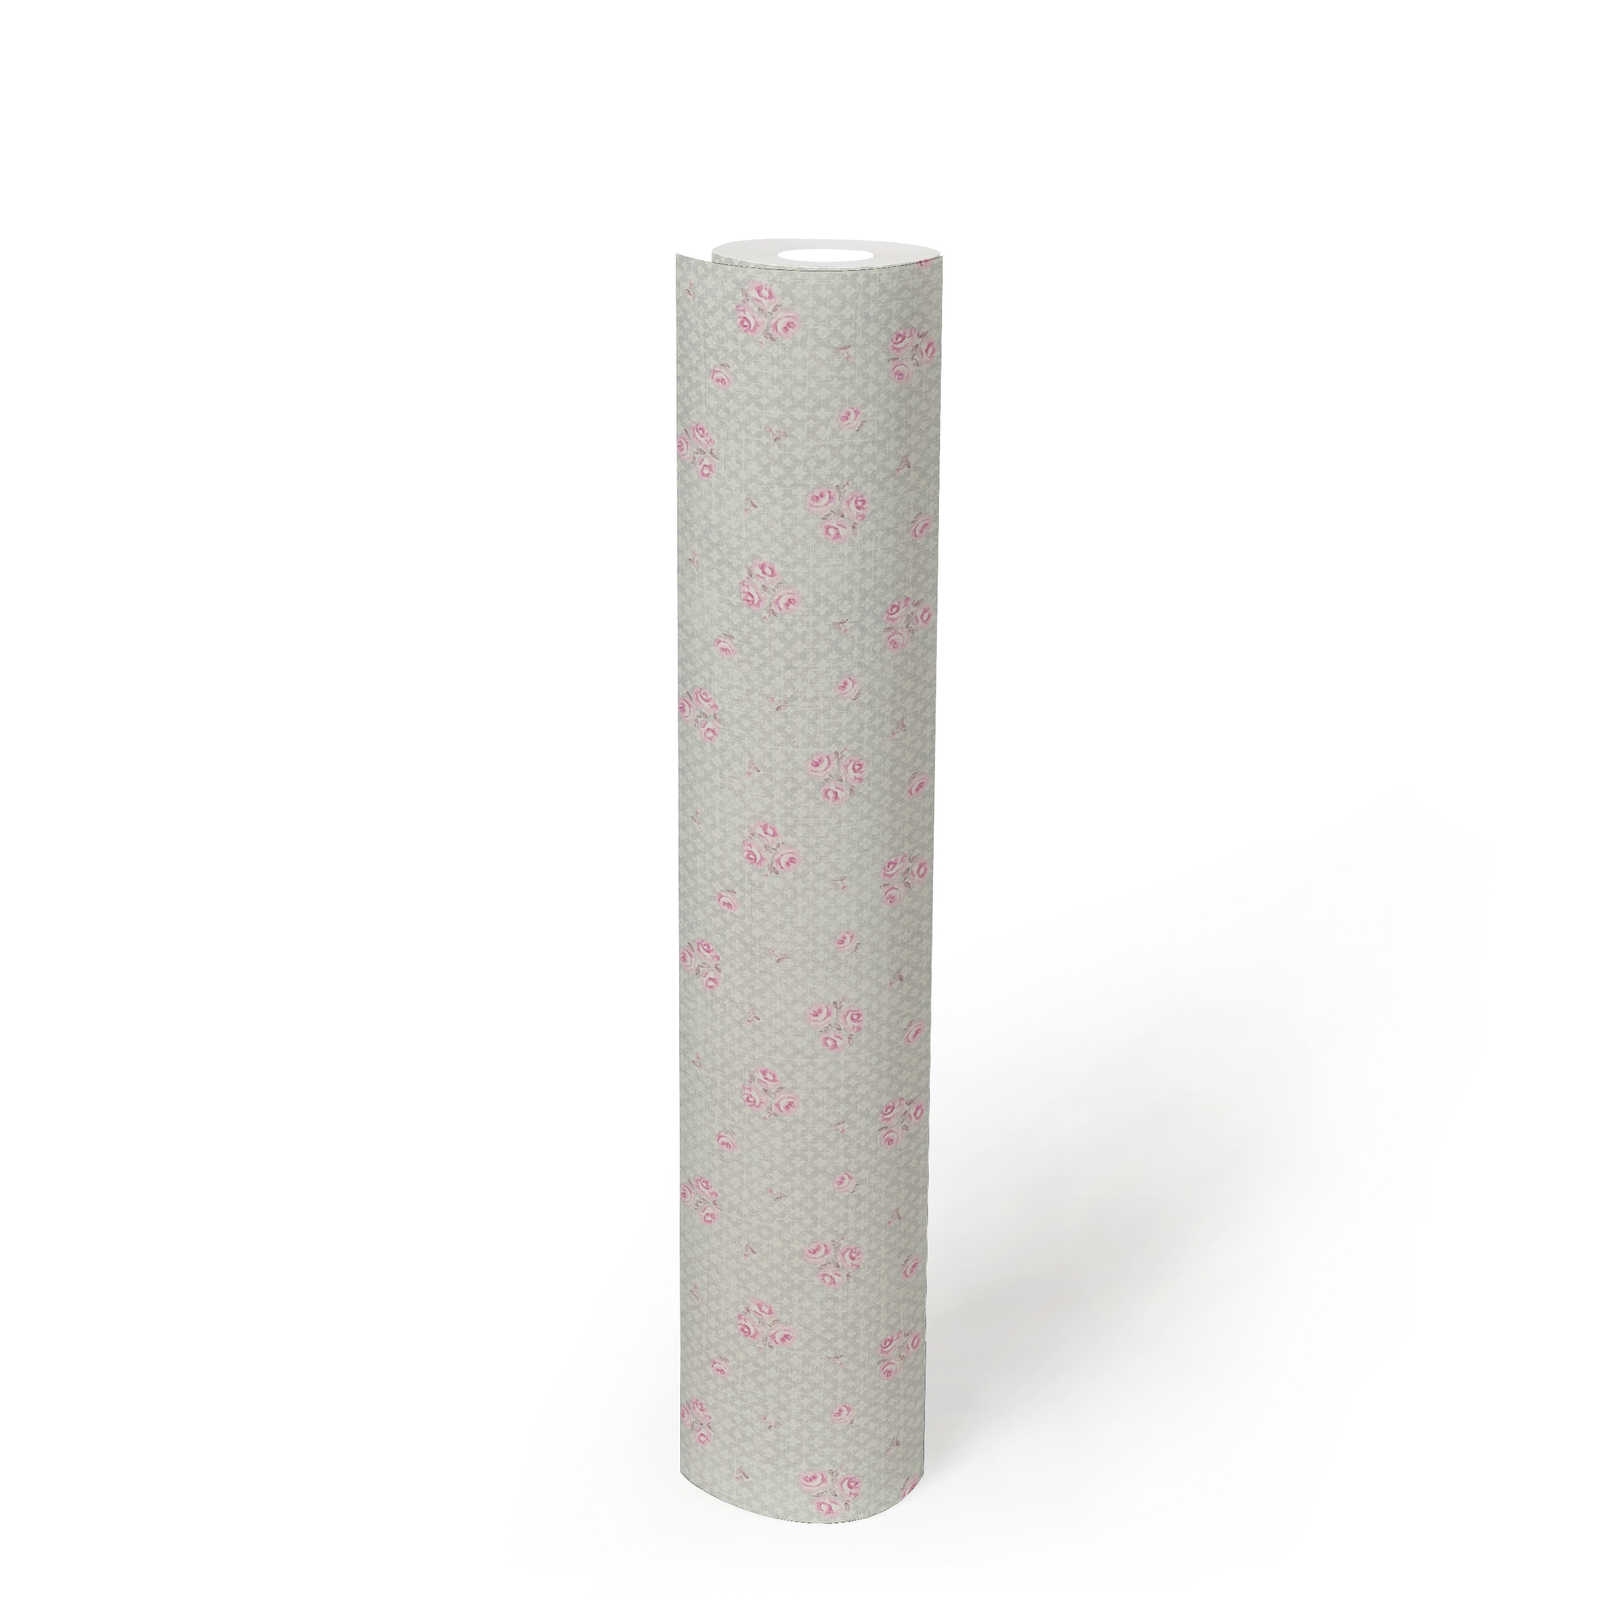             Carta da parati in tessuto non tessuto con motivo floreale in stile Shabby Chic - grigio, rosa, bianco
        